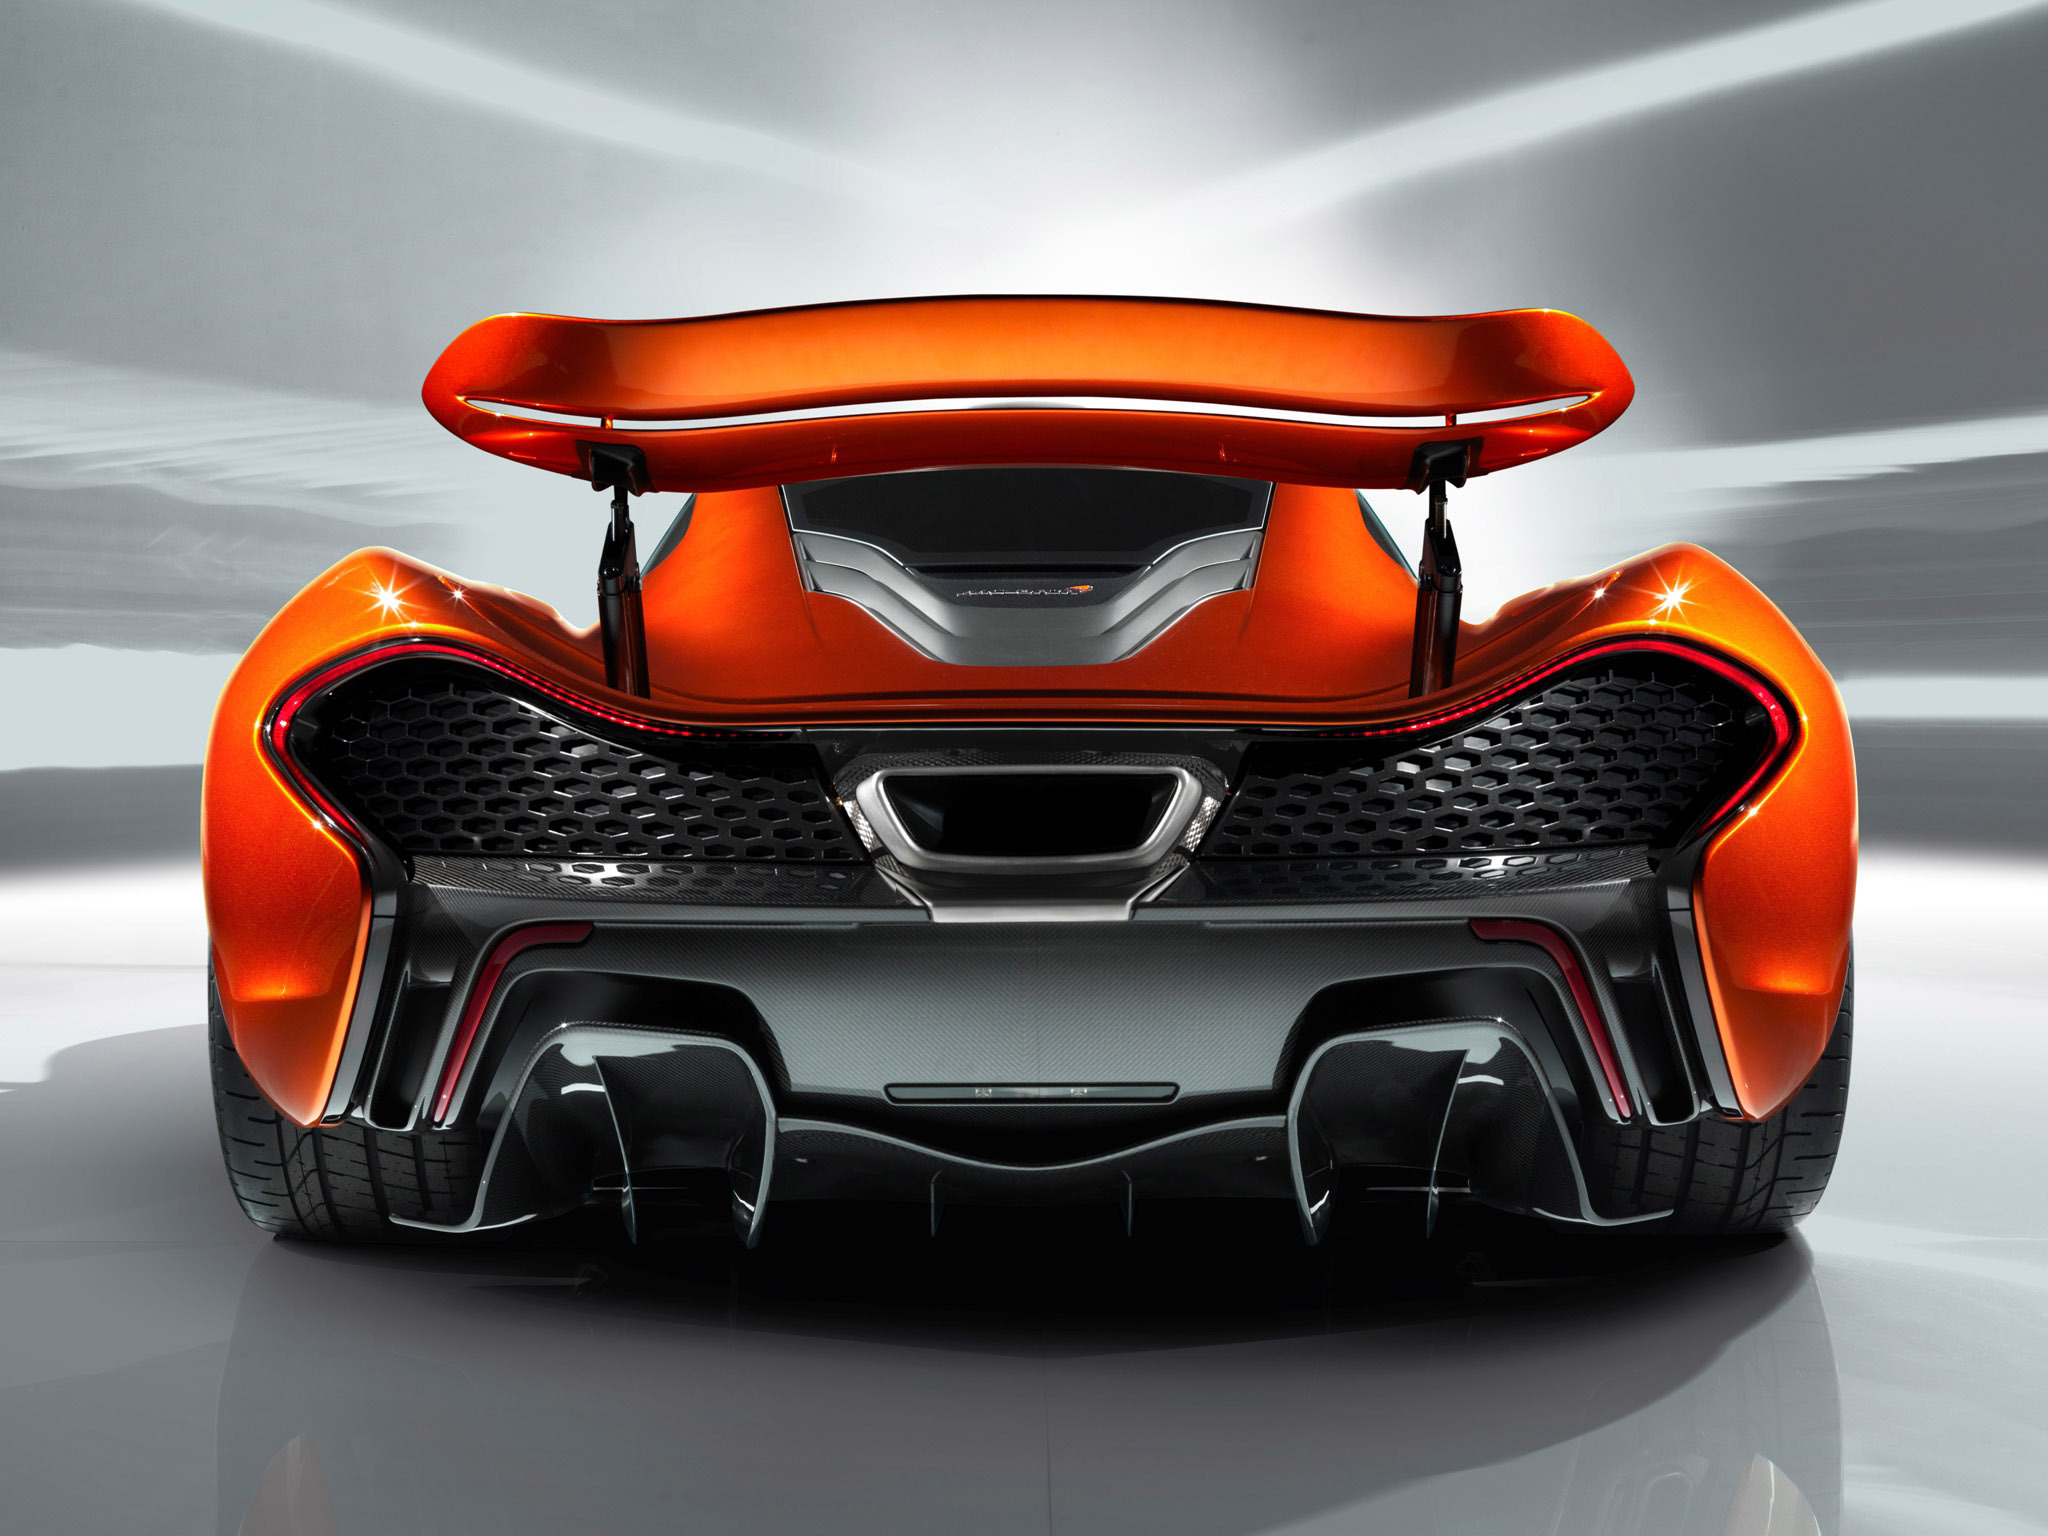 超跑之王 迈凯伦McLaren P1高清赏析-汽车频道-和讯网